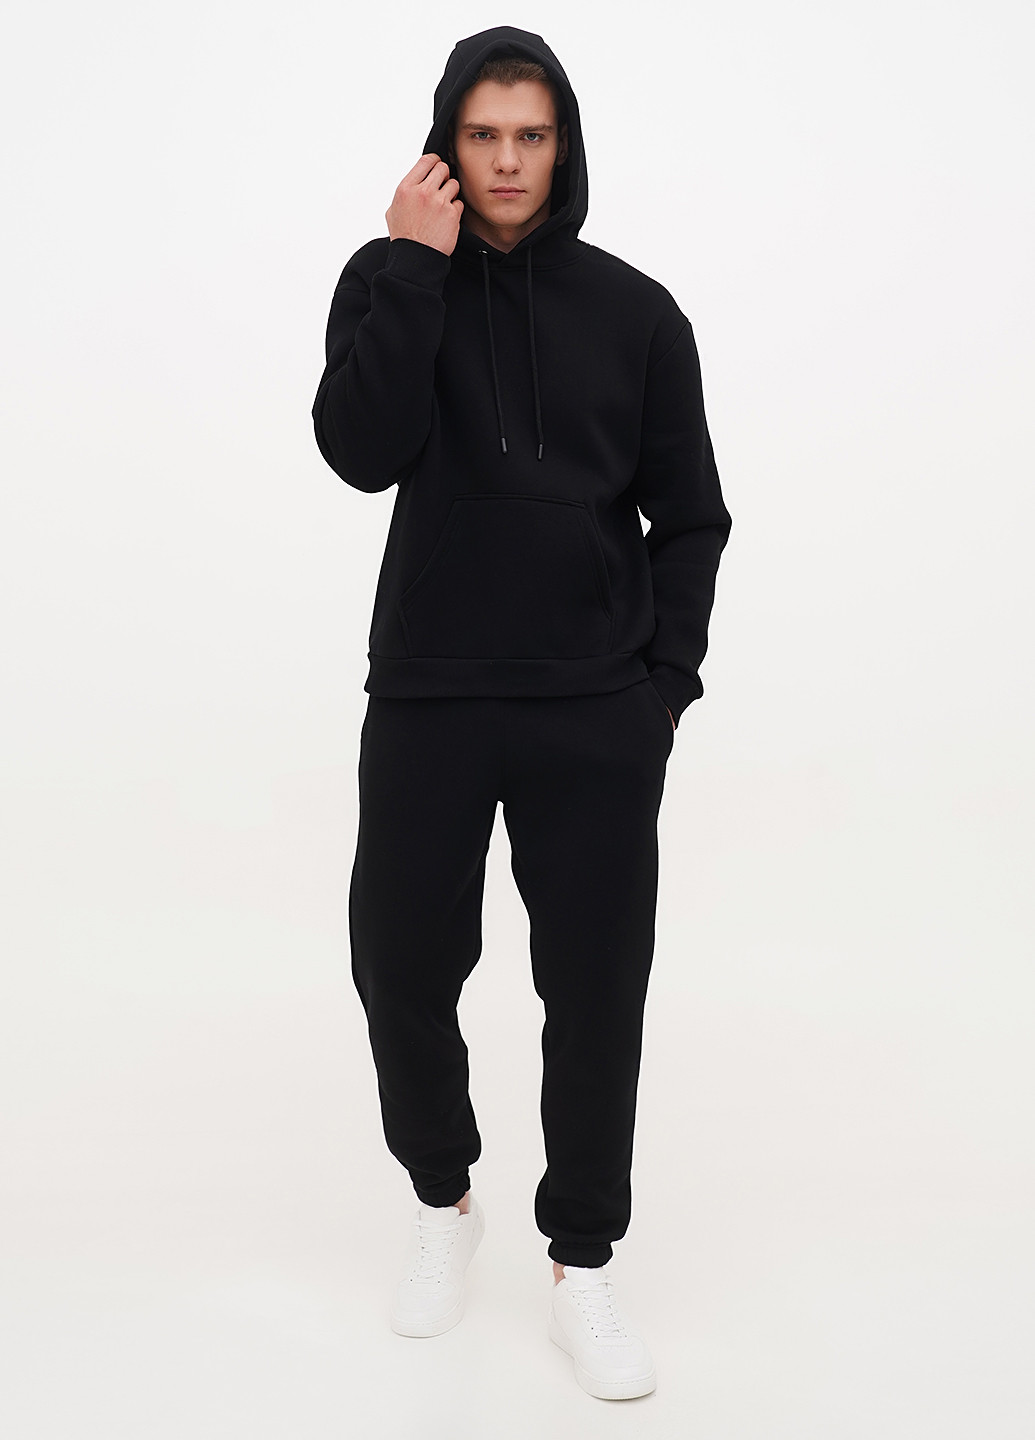 Мужской спортивный костюм KASTA design однотонный чёрный кэжуал, спортивный флис, хлопок